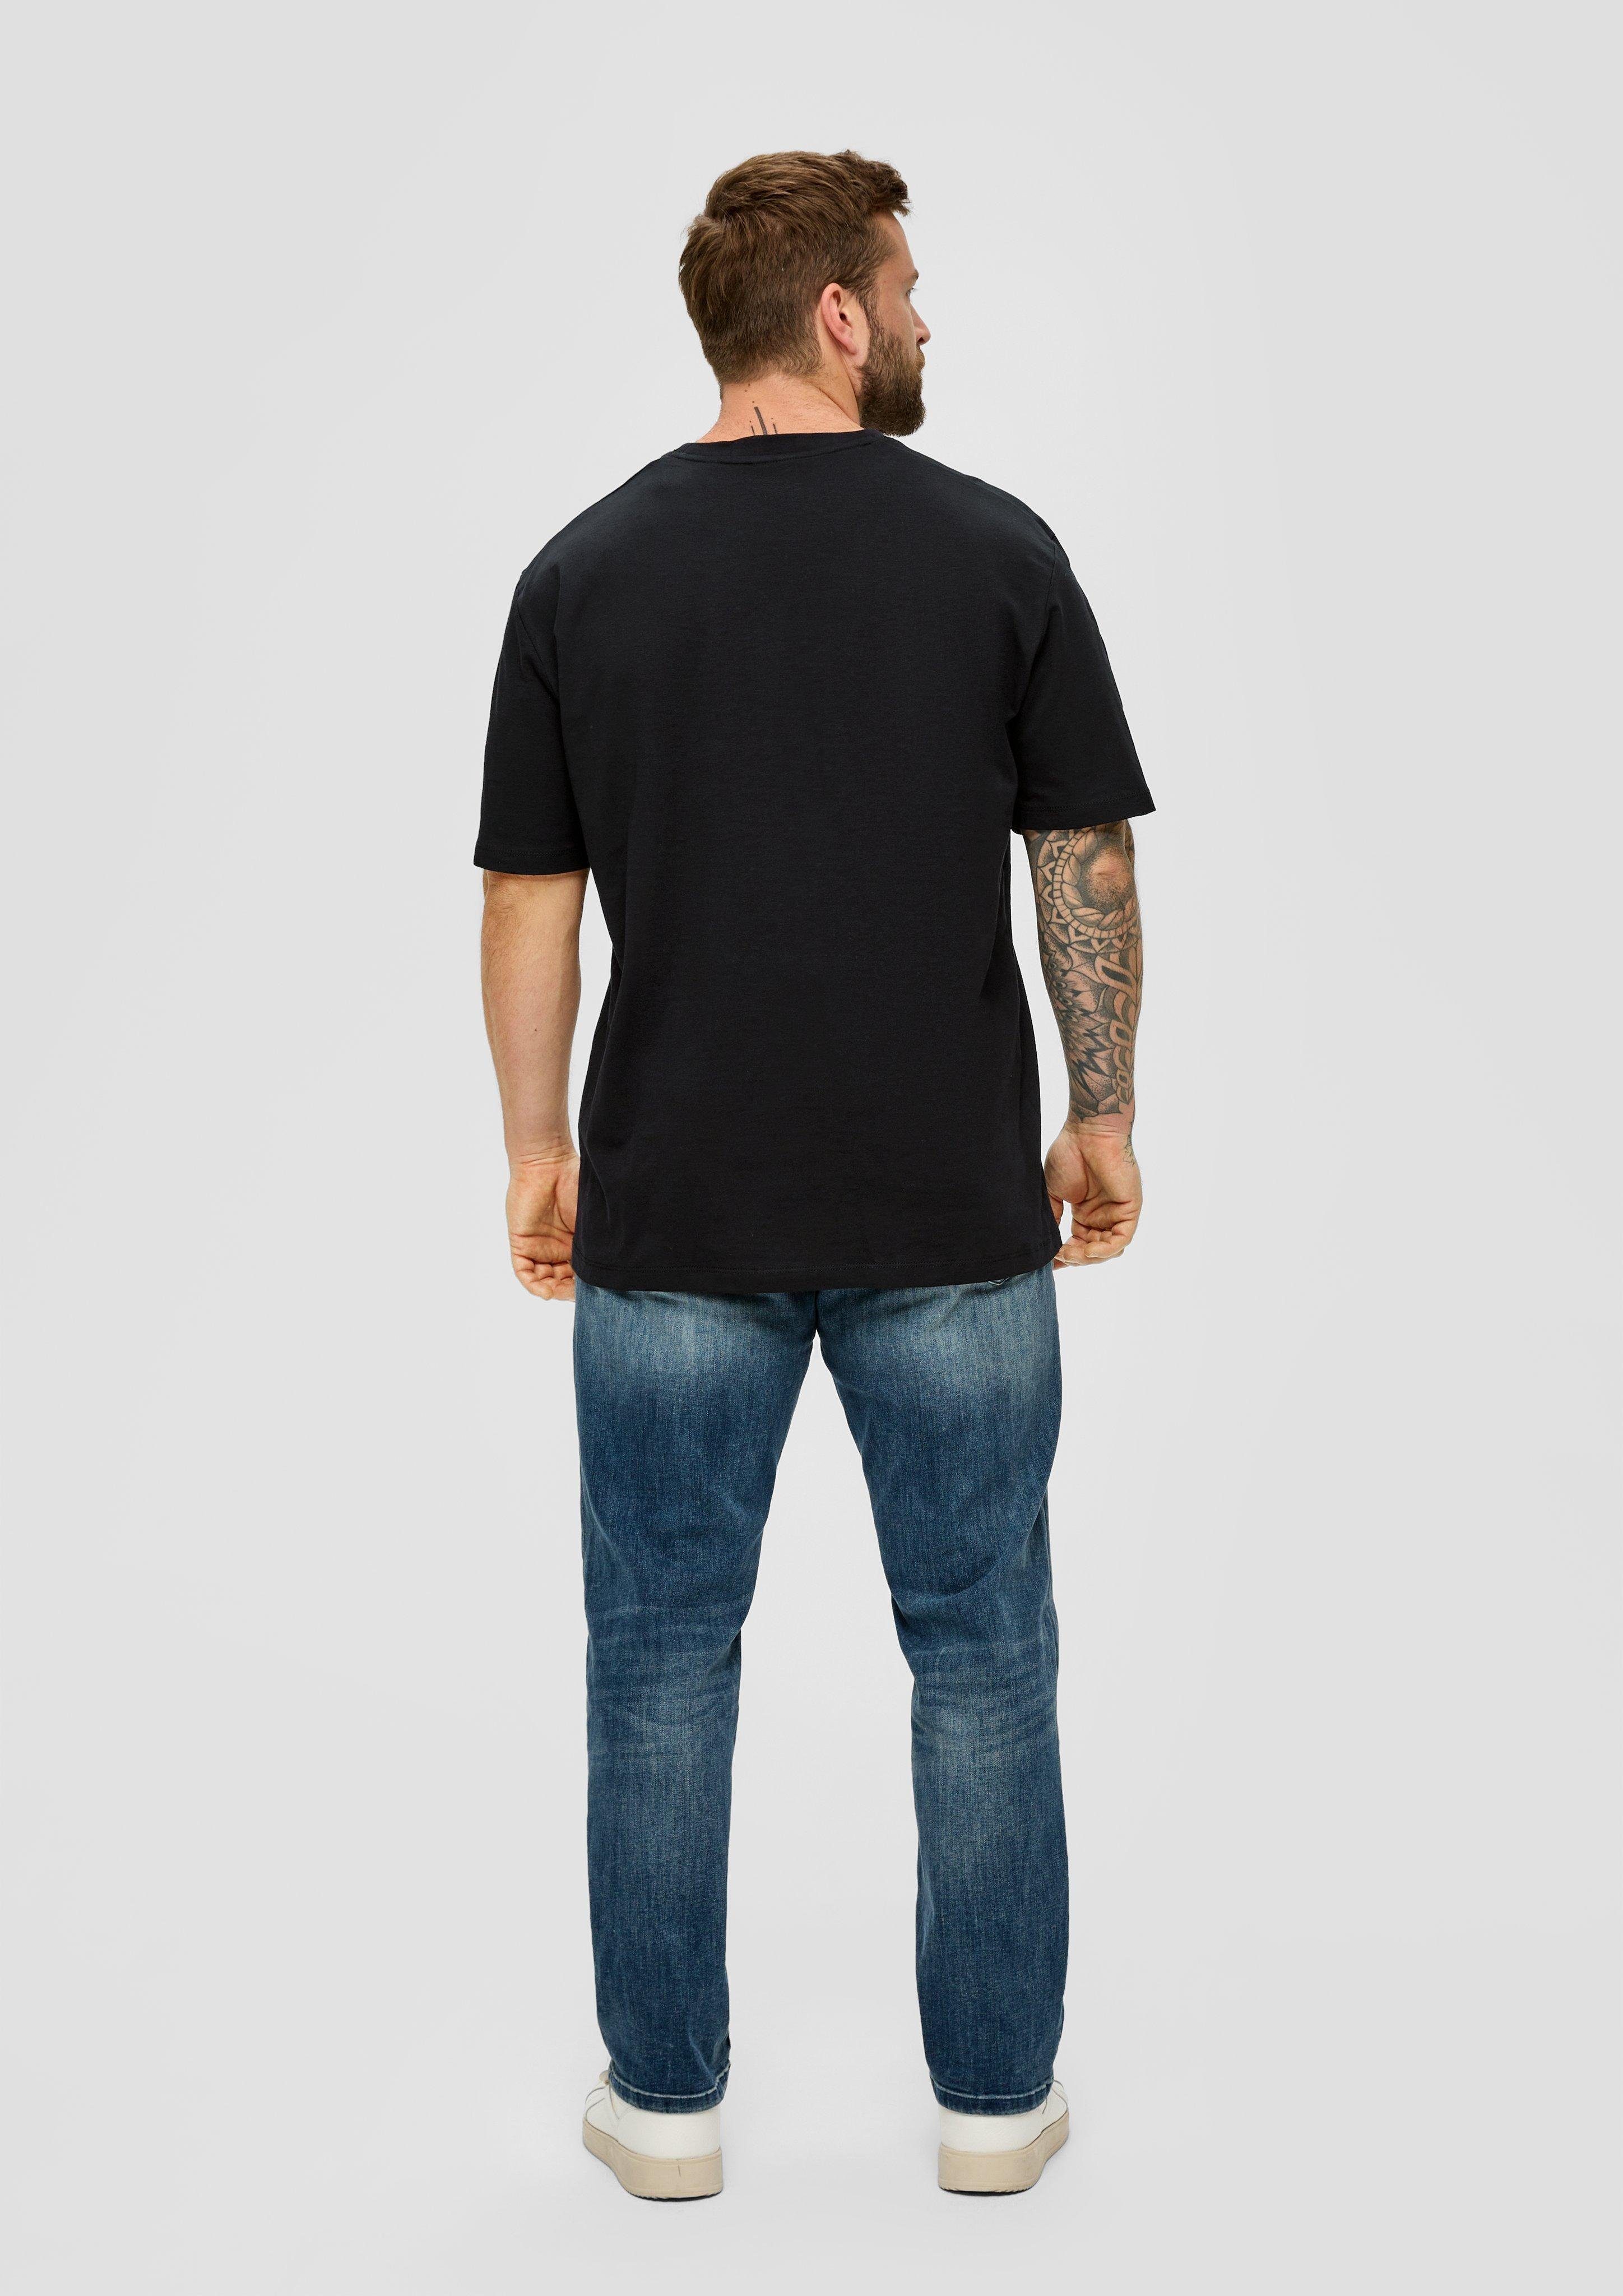 Baumwollshirt schwarz s.Oliver Flammgarnstruktur mit Kurzarmshirt